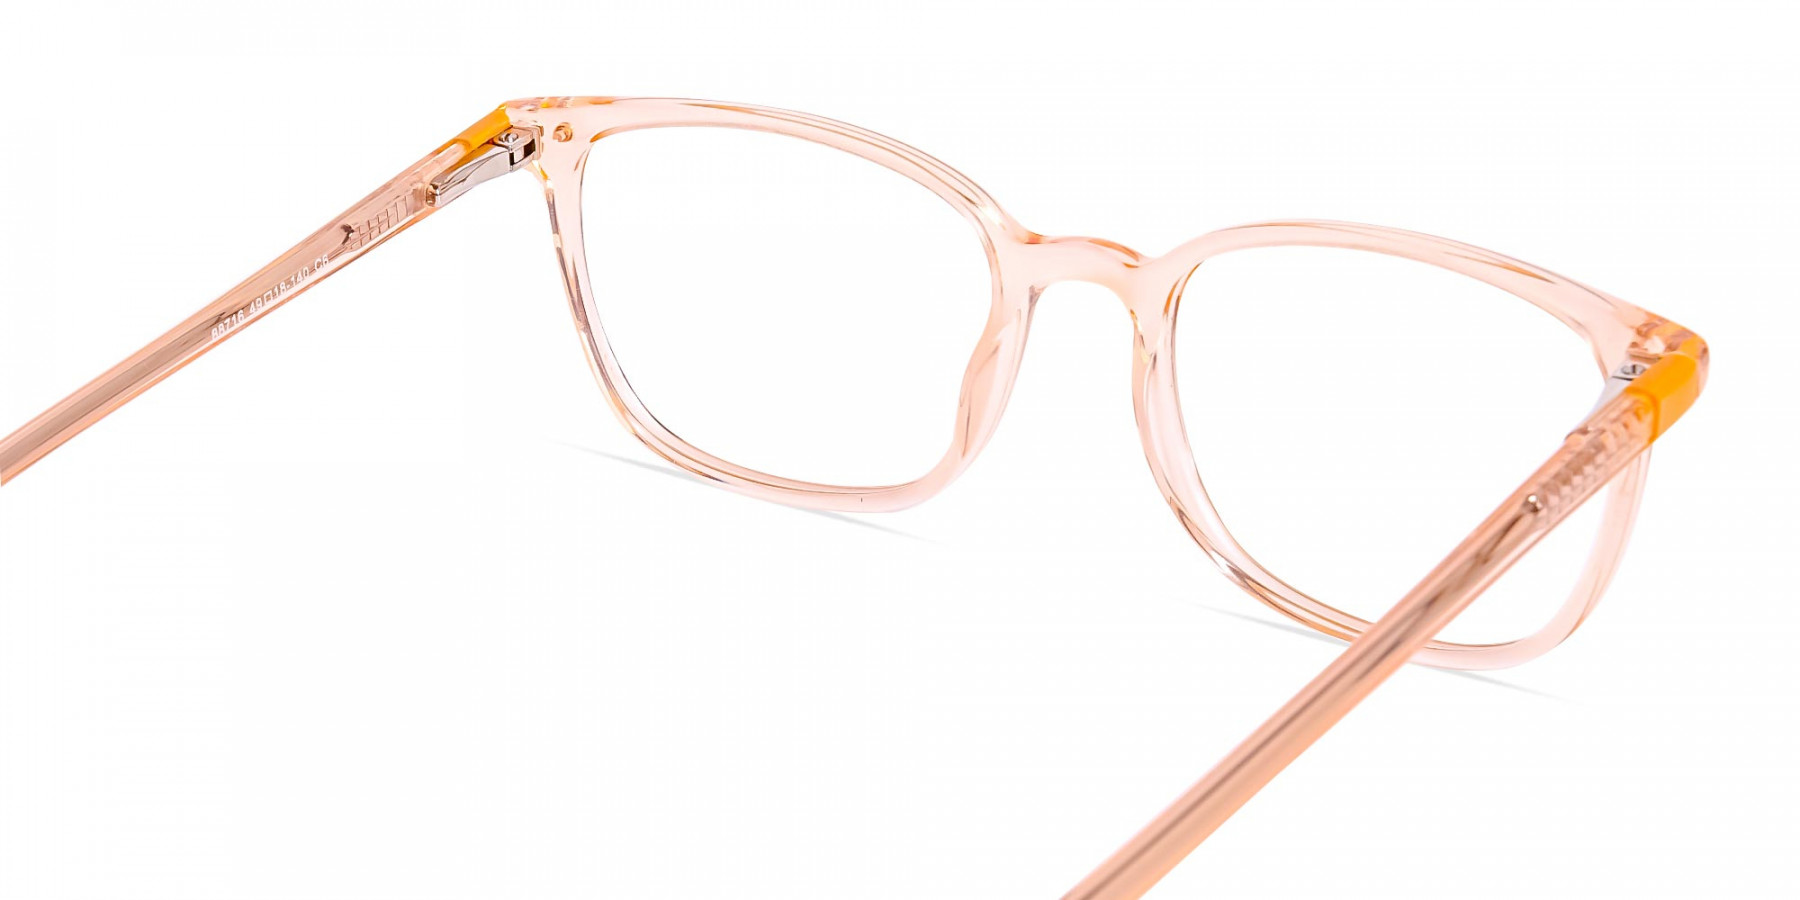 Crystal-clear-and-Transparent-Orange-Rectangular-Glasses-Frames-1